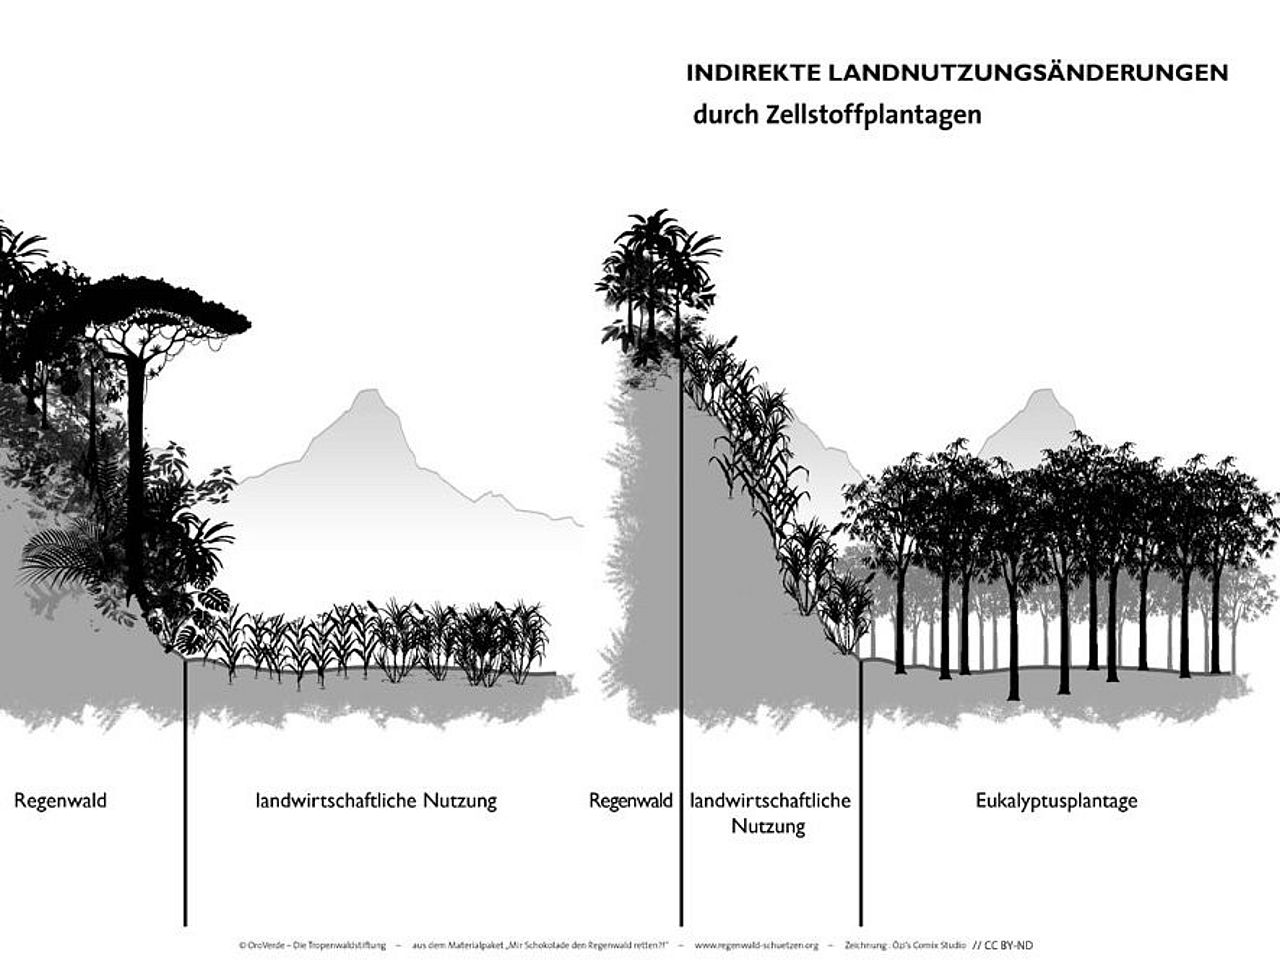 Grafik: indirekte Landnutzungsänderung mittels Abholzung von Regenwald für Fasern für Papier